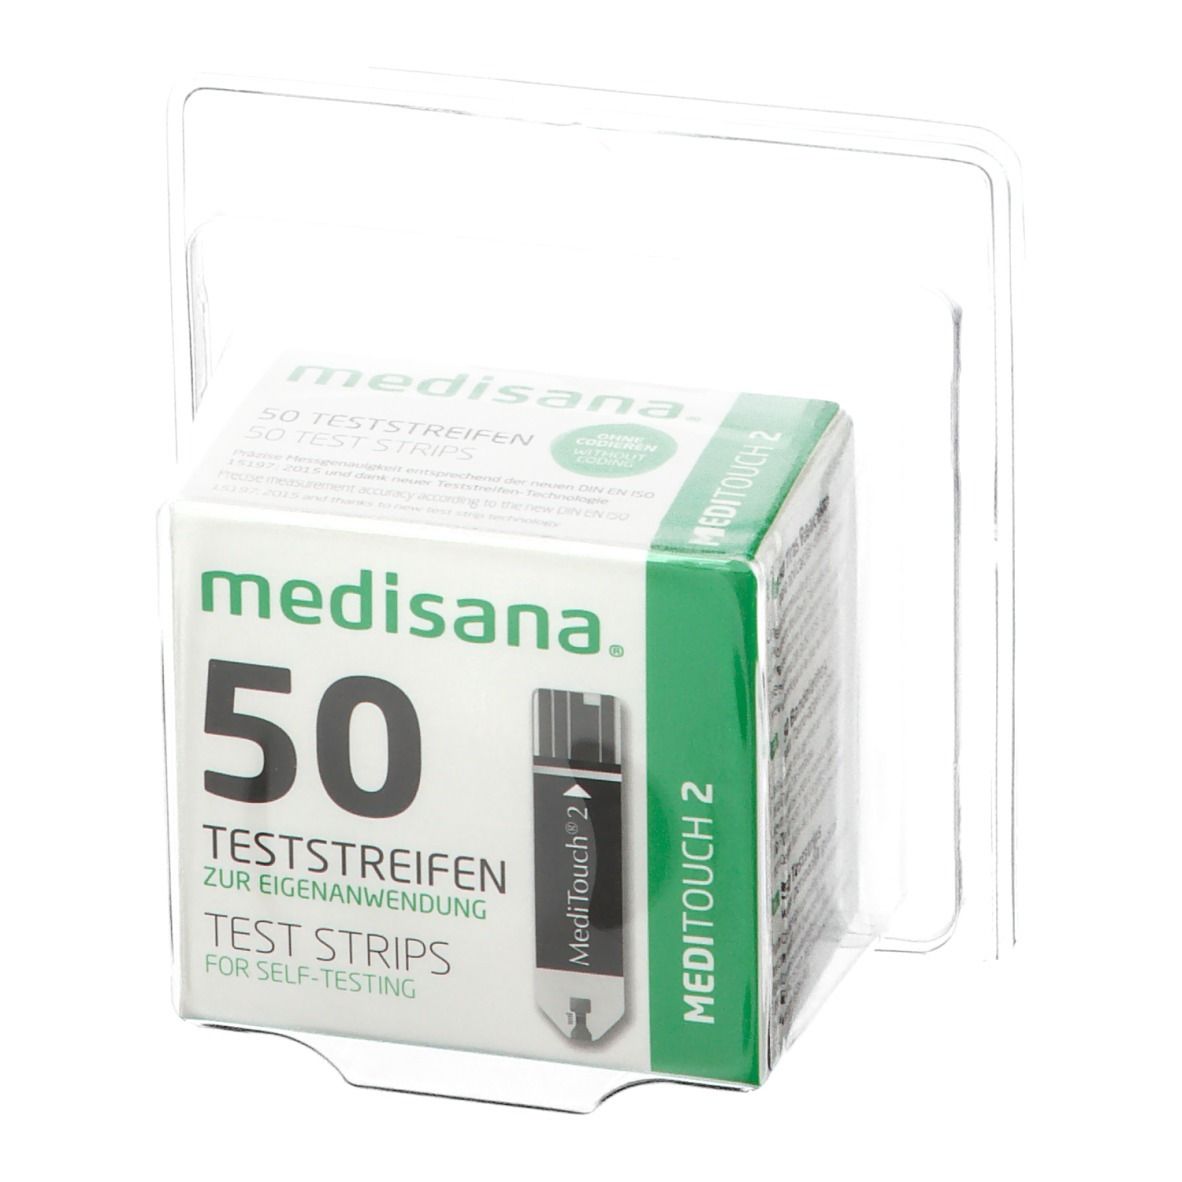 MEDISANA® Meditouch 2 Test Strips